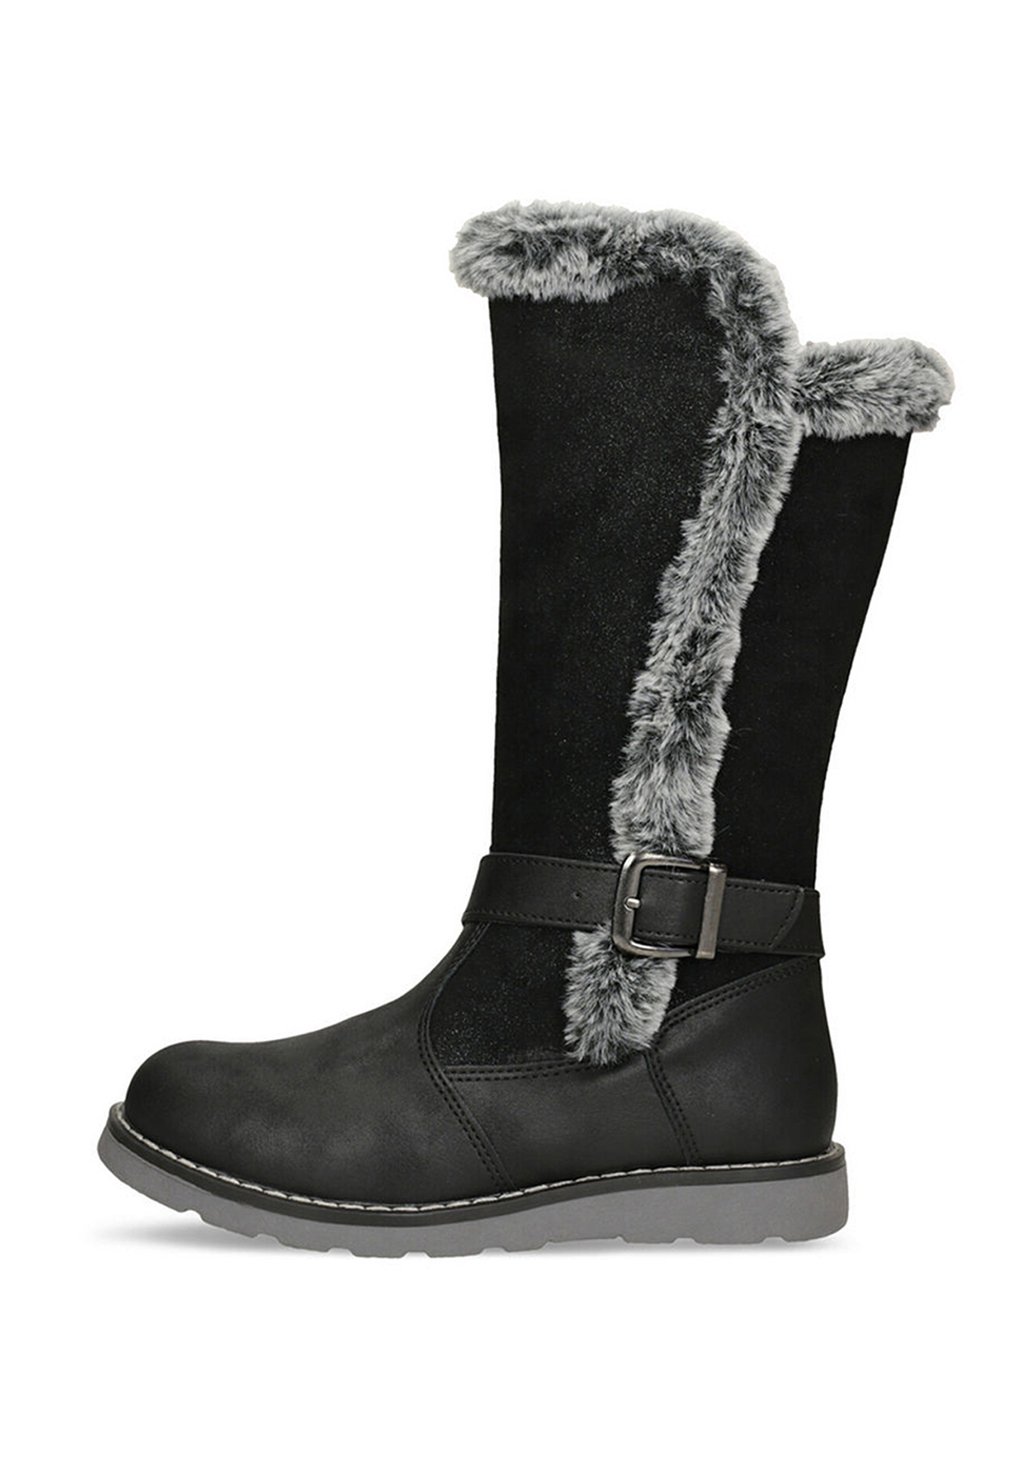 Снегоступы/зимние ботинки Bata, цвет schwarz снегоступы зимние ботинки ricosta цвет pavone nebel